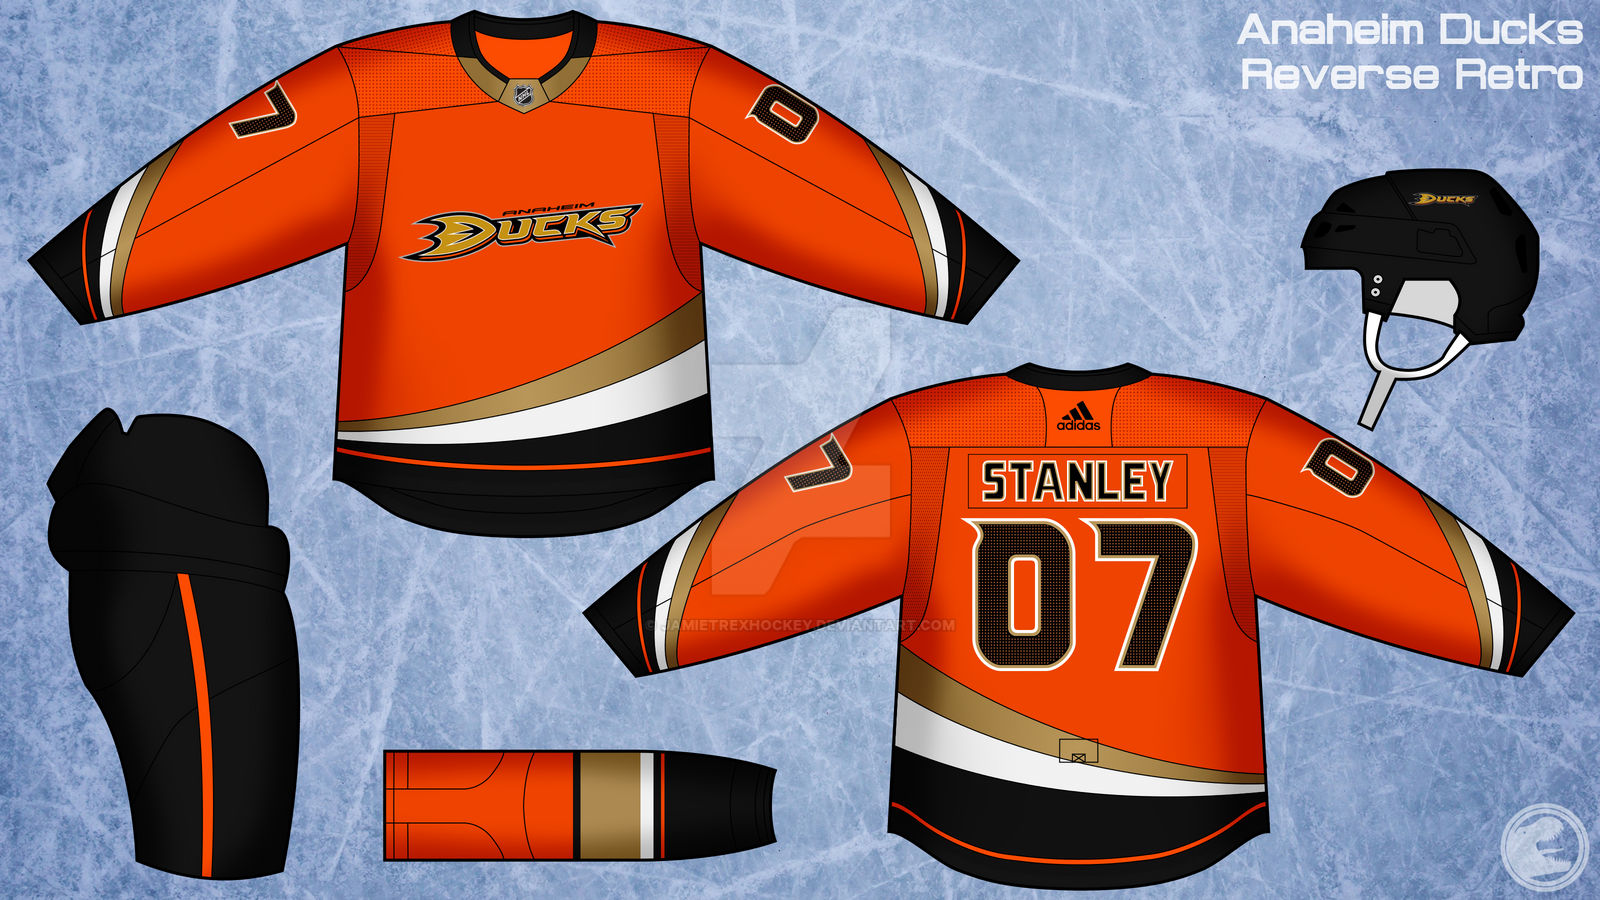 New Uniforms for Anaheim Ducks